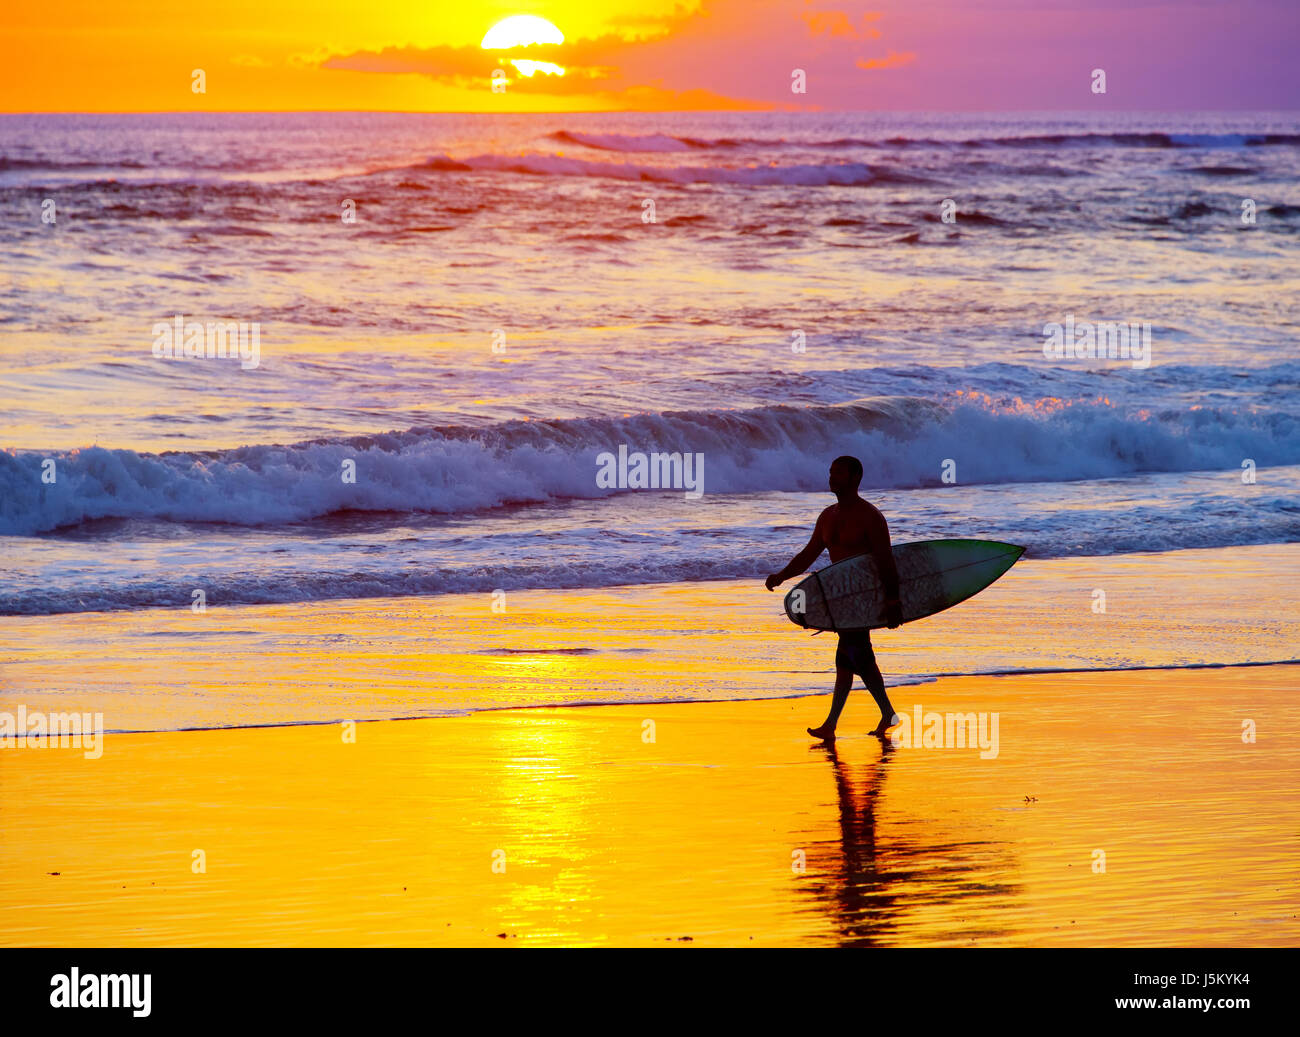 Surfer mit Surfbrett zu Fuß am Strand bei Sonnenuntergang. Insel Bali, Indonesien Stockfoto